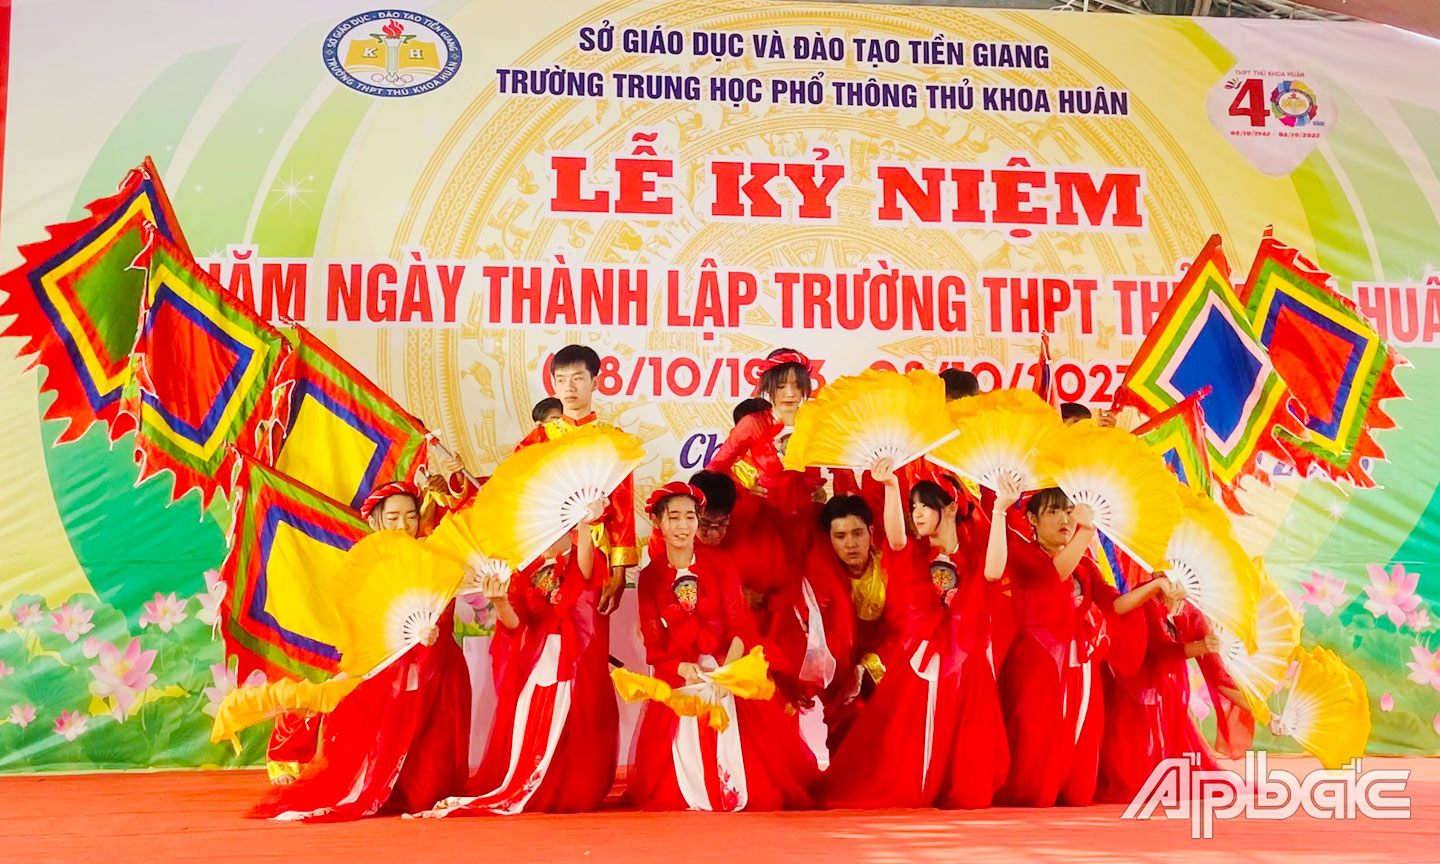 Lễ kỷ niệm 40 năm Ngày thành lập Trường THPT Thủ Khoa Huân.